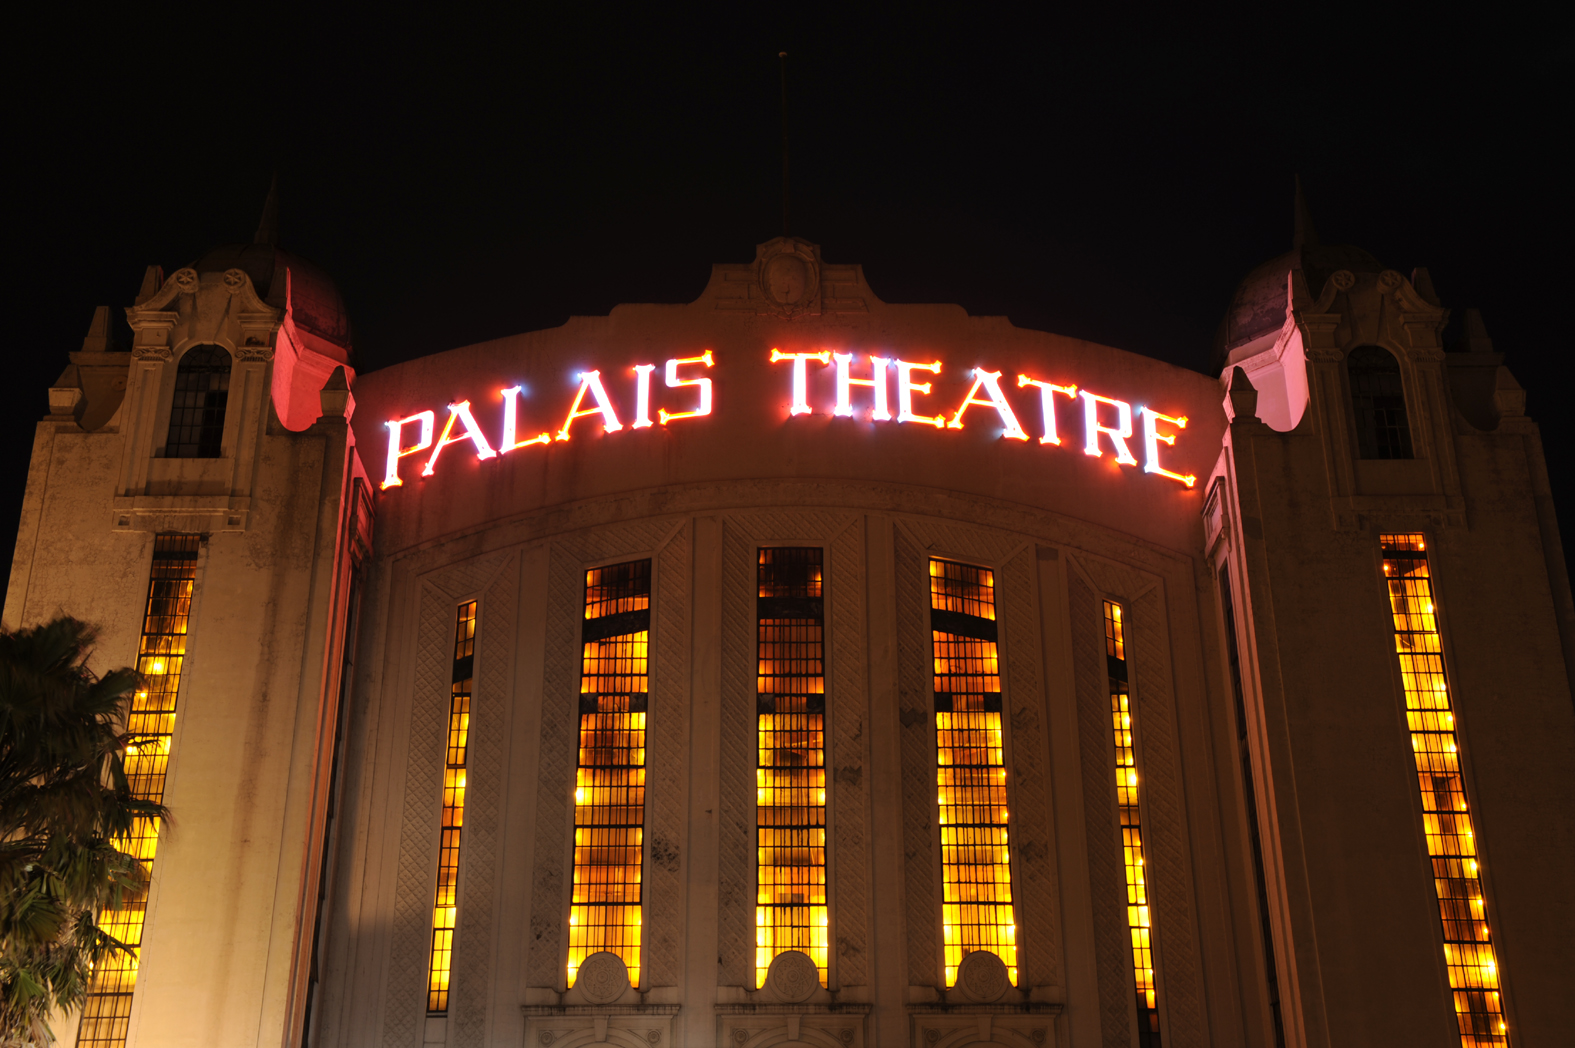 Palais Theatre - Melbourne, Australia